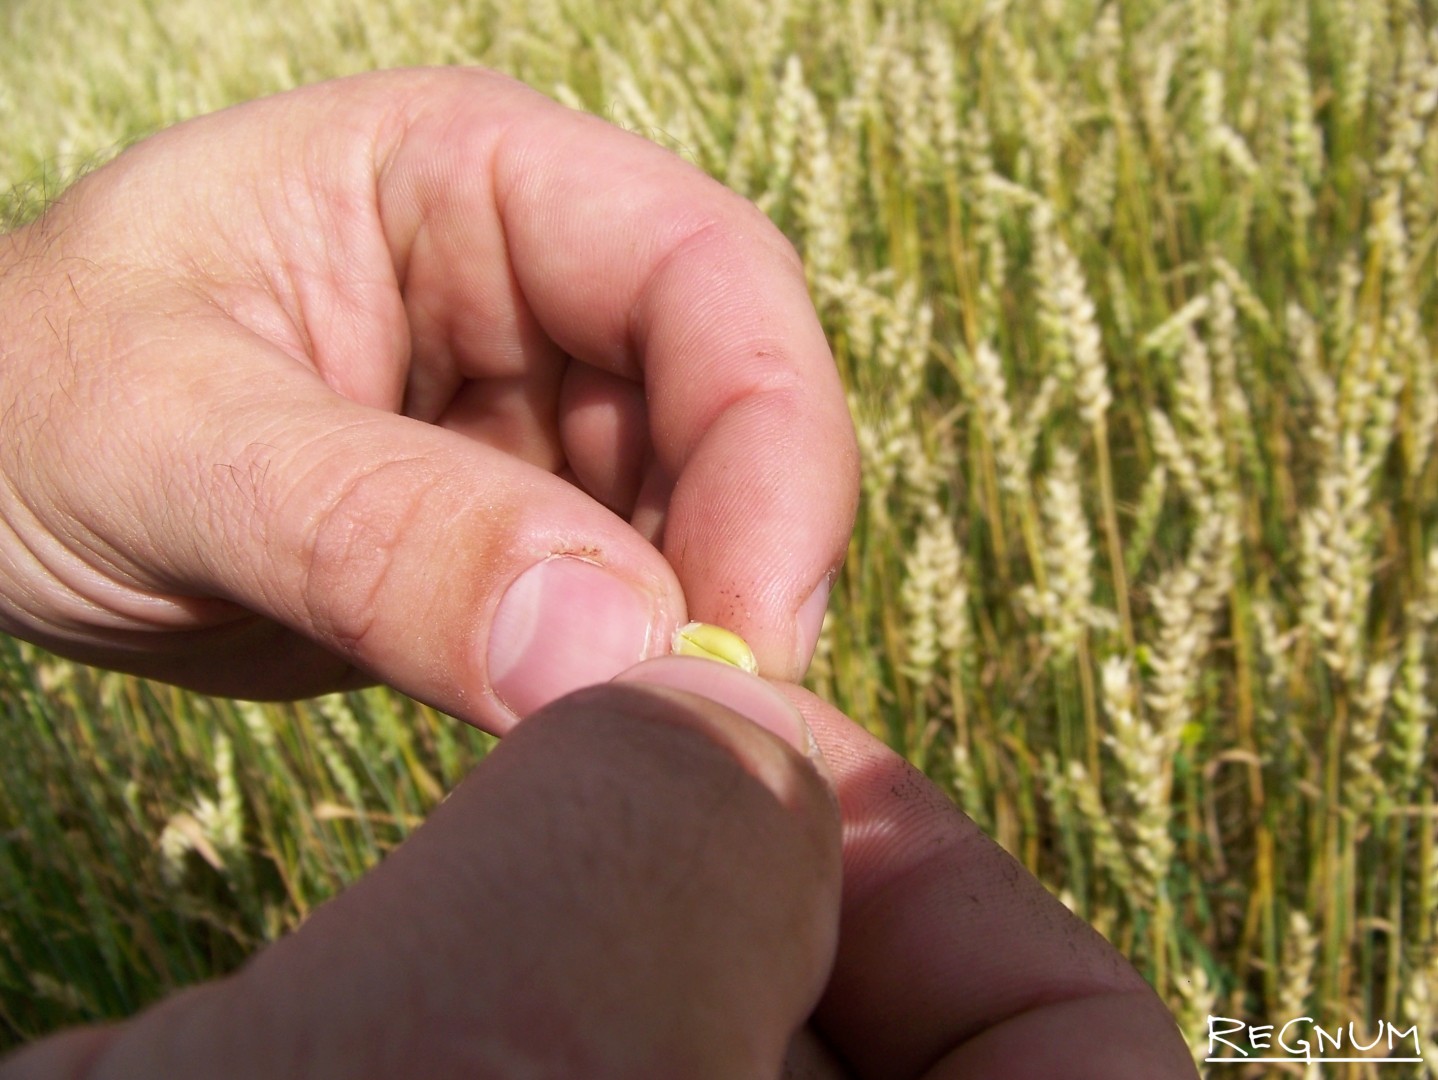 Уборка зерновых в Алтайском крае. Качество пшеницы в Хабарском районе не слишком высоко из-за погодных условий